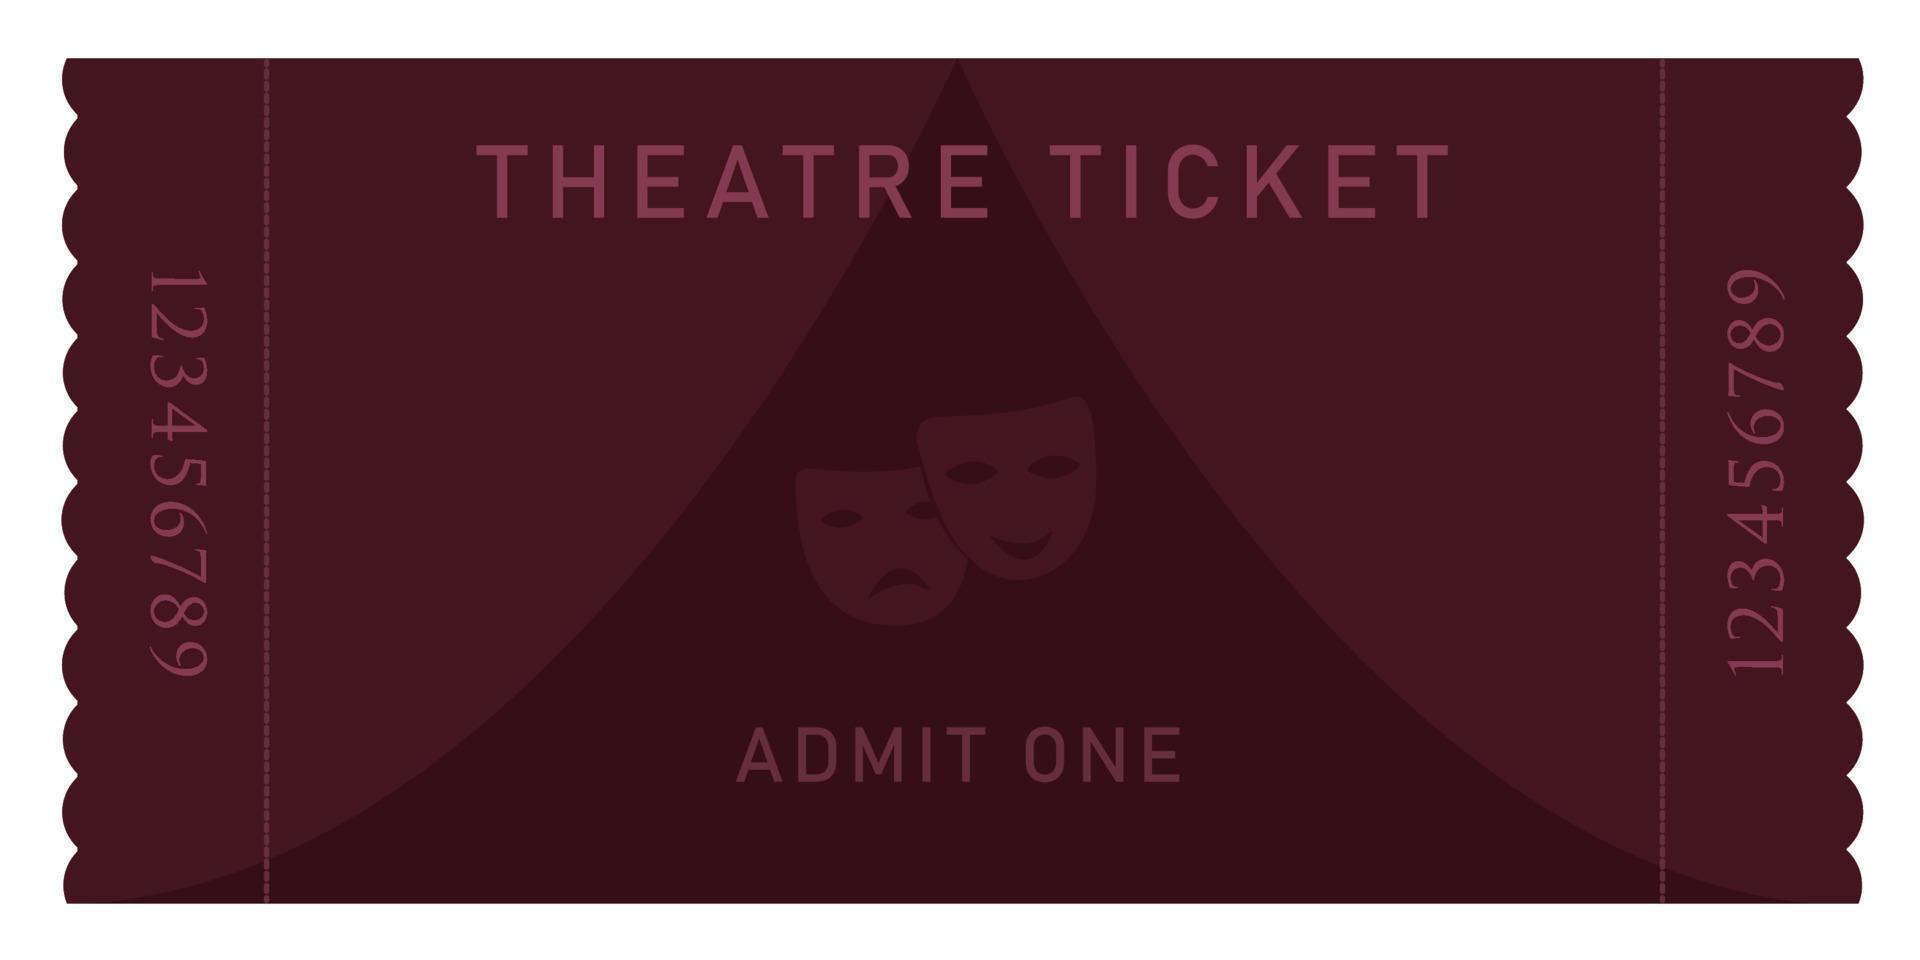 Eintrittskarte für die Burgunder Theaterparty vektor